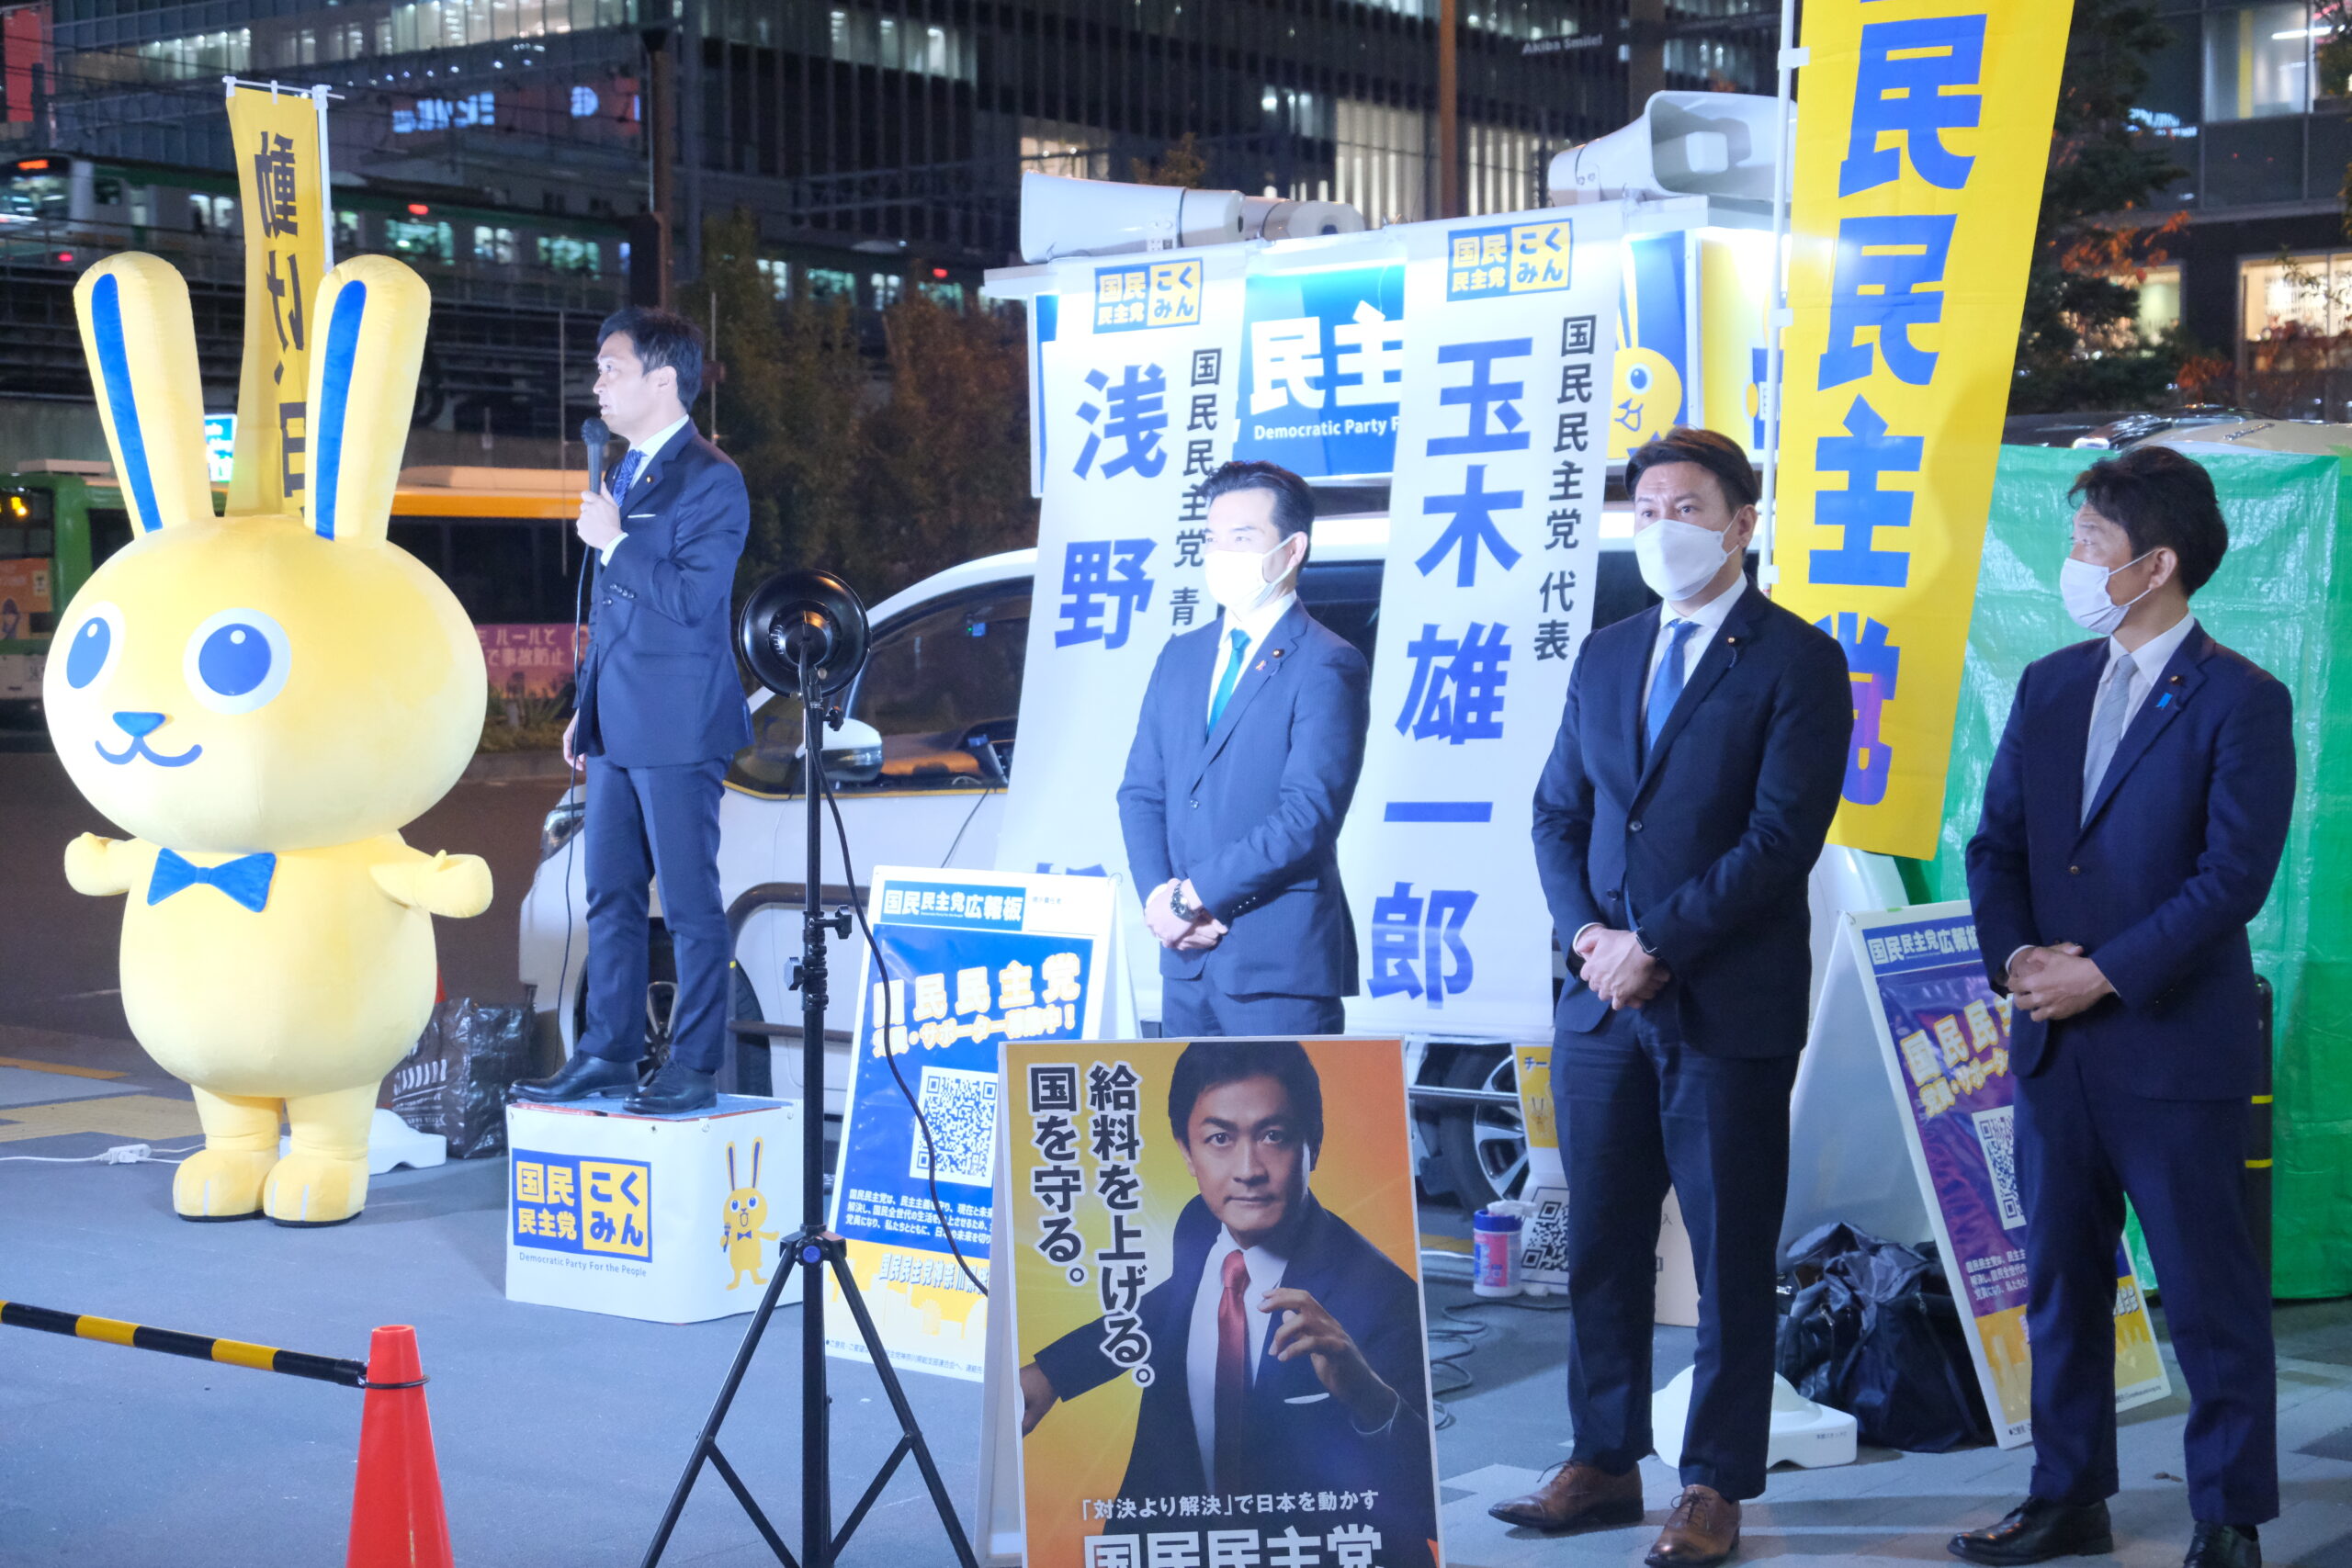 【青年局】「新しい風を吹き込みながら、国民民主党の可能性をもっと大きく広げていく」国民民主党青年局が東京都内で街頭演説会を開催